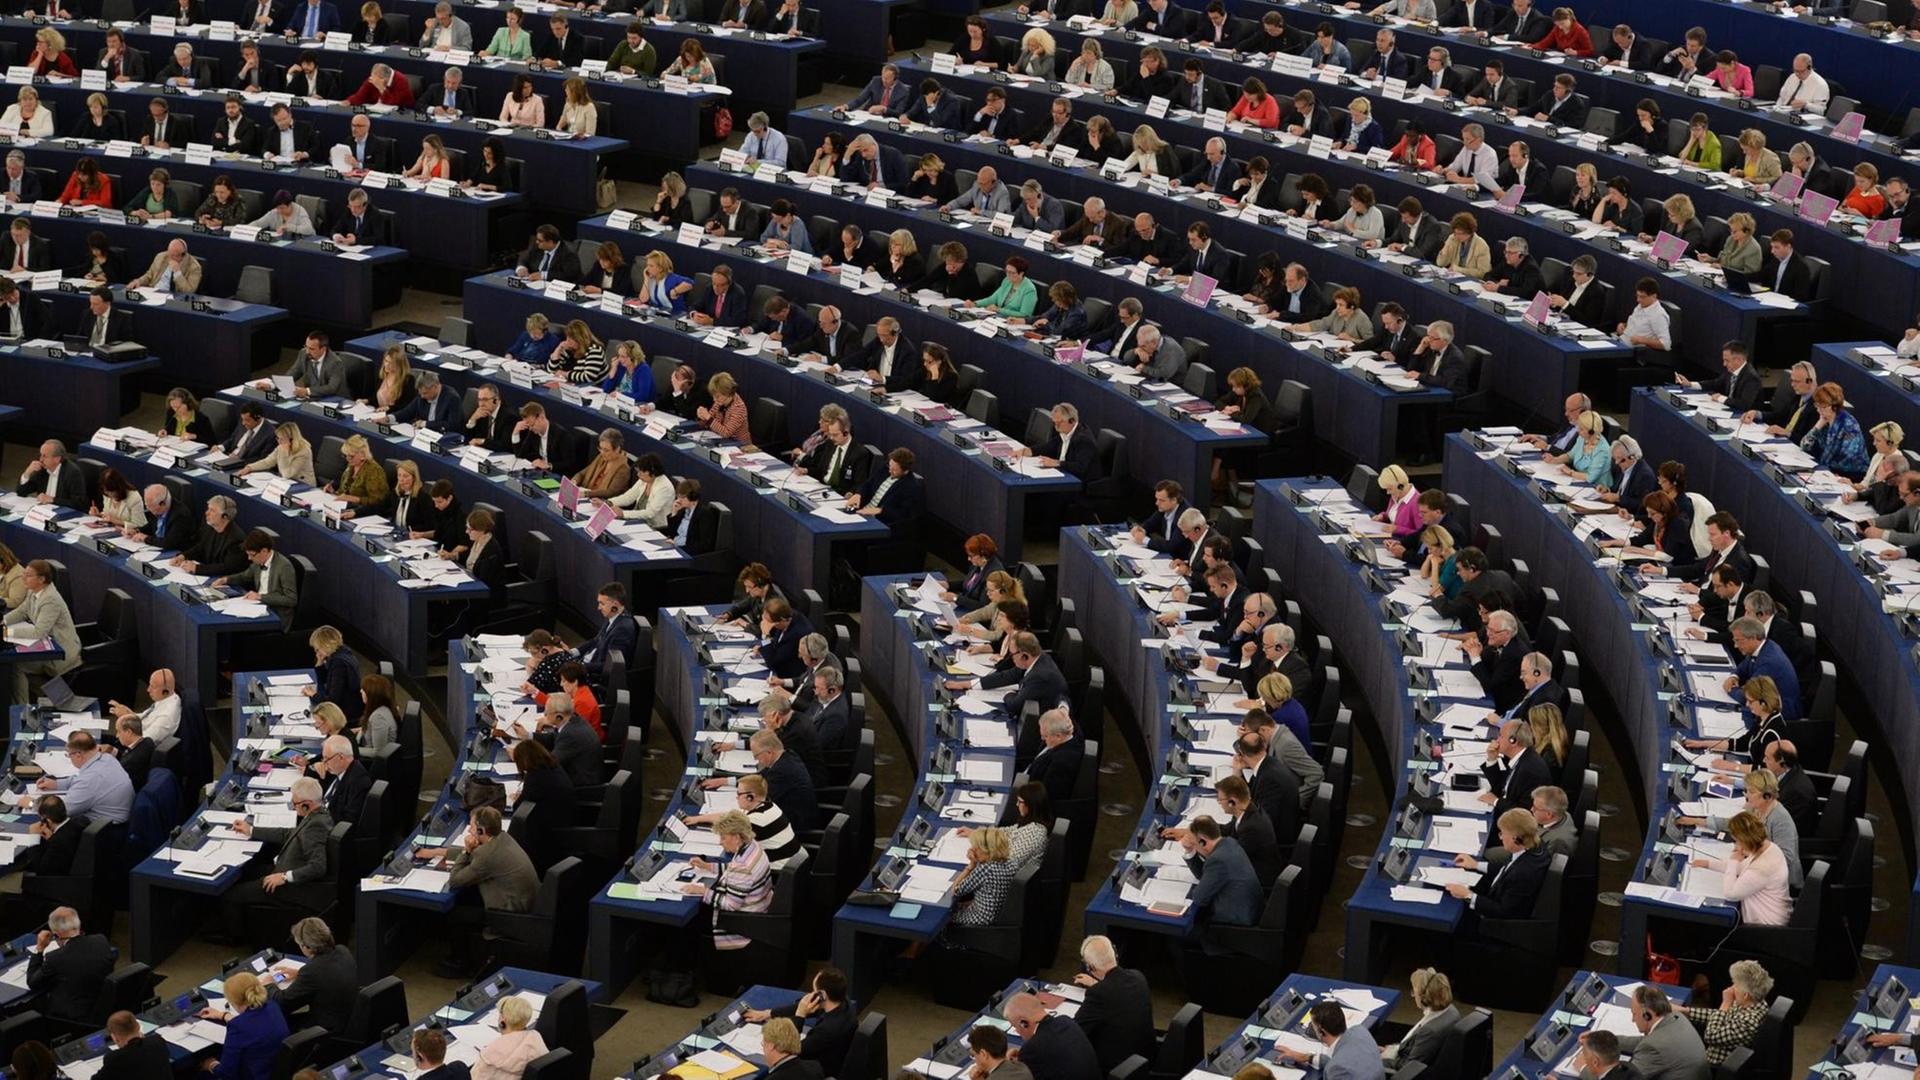 Blick in den Saal des EU-Parlaments während einer Abstimmung am 20.5.15